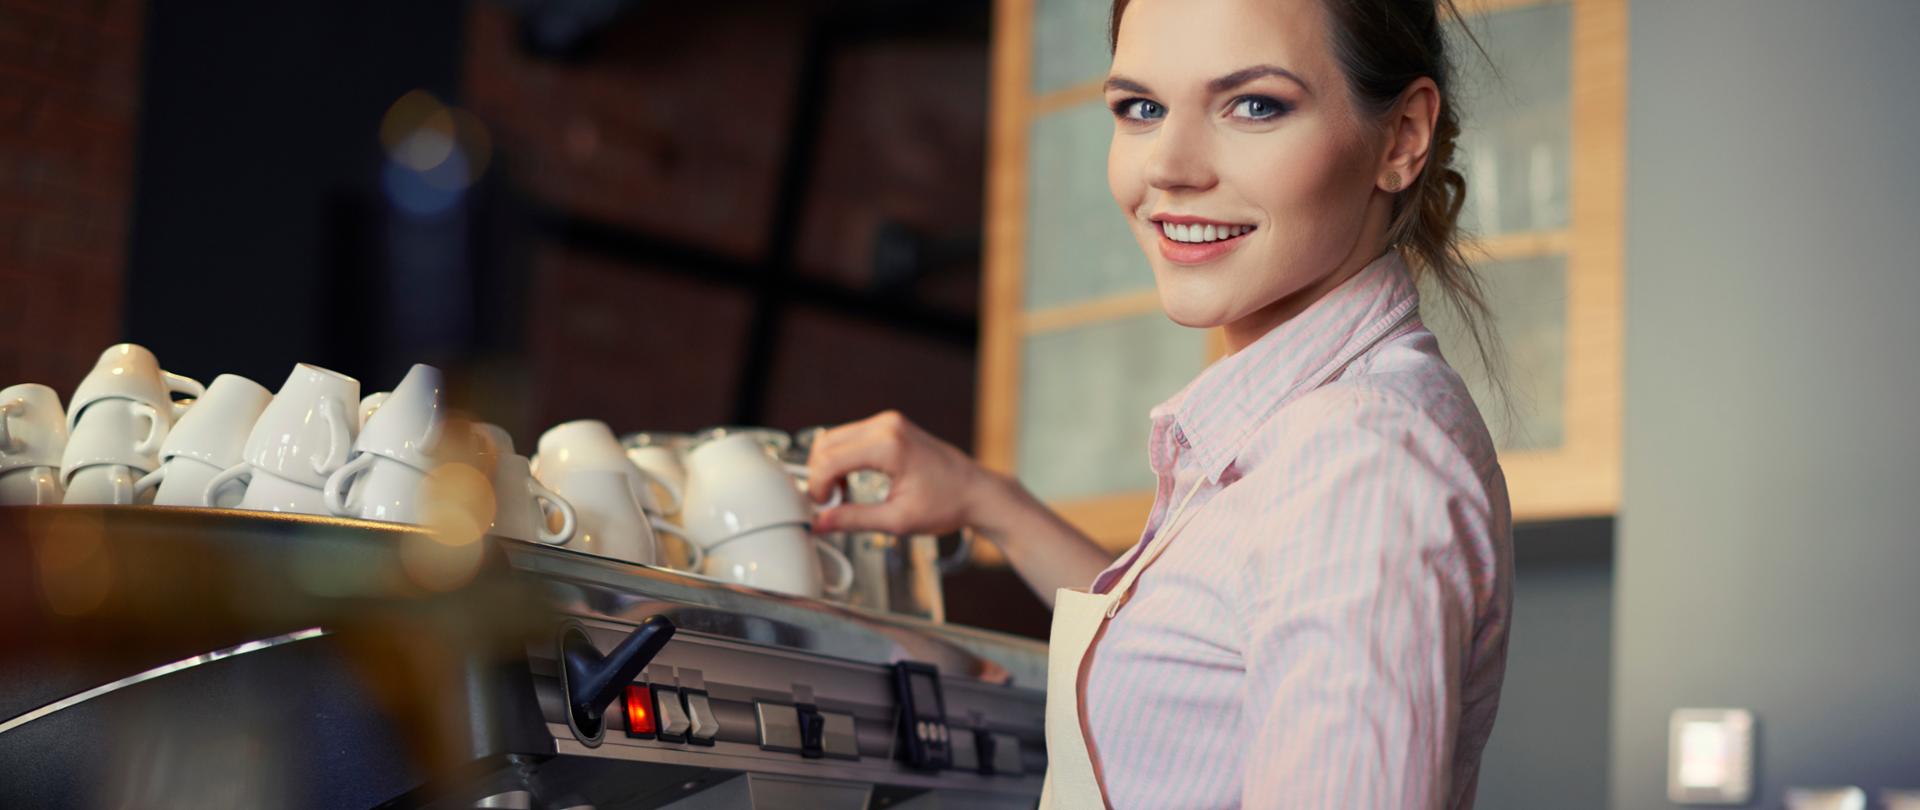 Portret baristki robiącej kawę przy ekspresie.